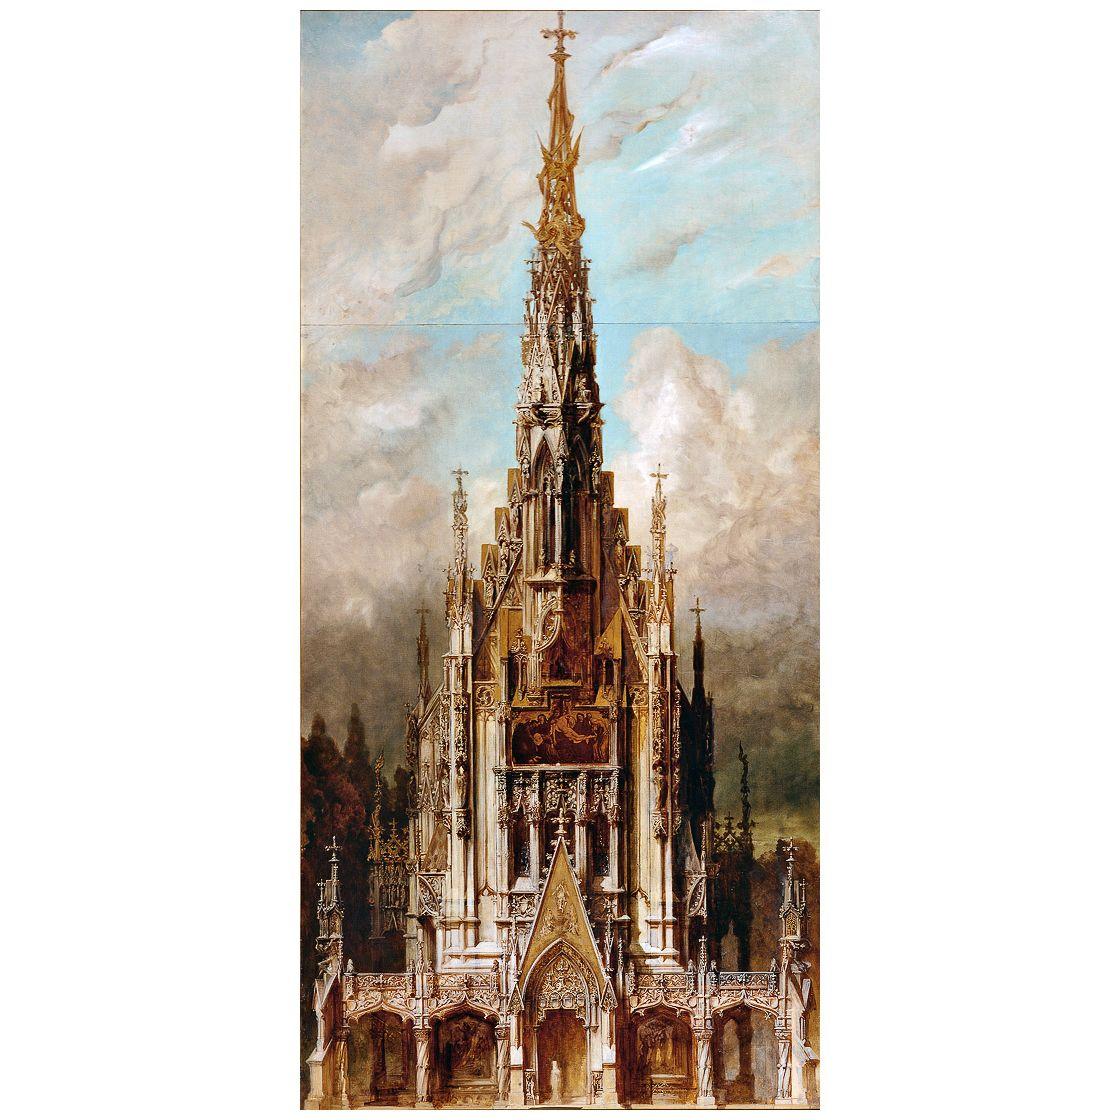 Hans Makart. Gotische Grabkirche St. Michael. 1883. Belvedere Wien